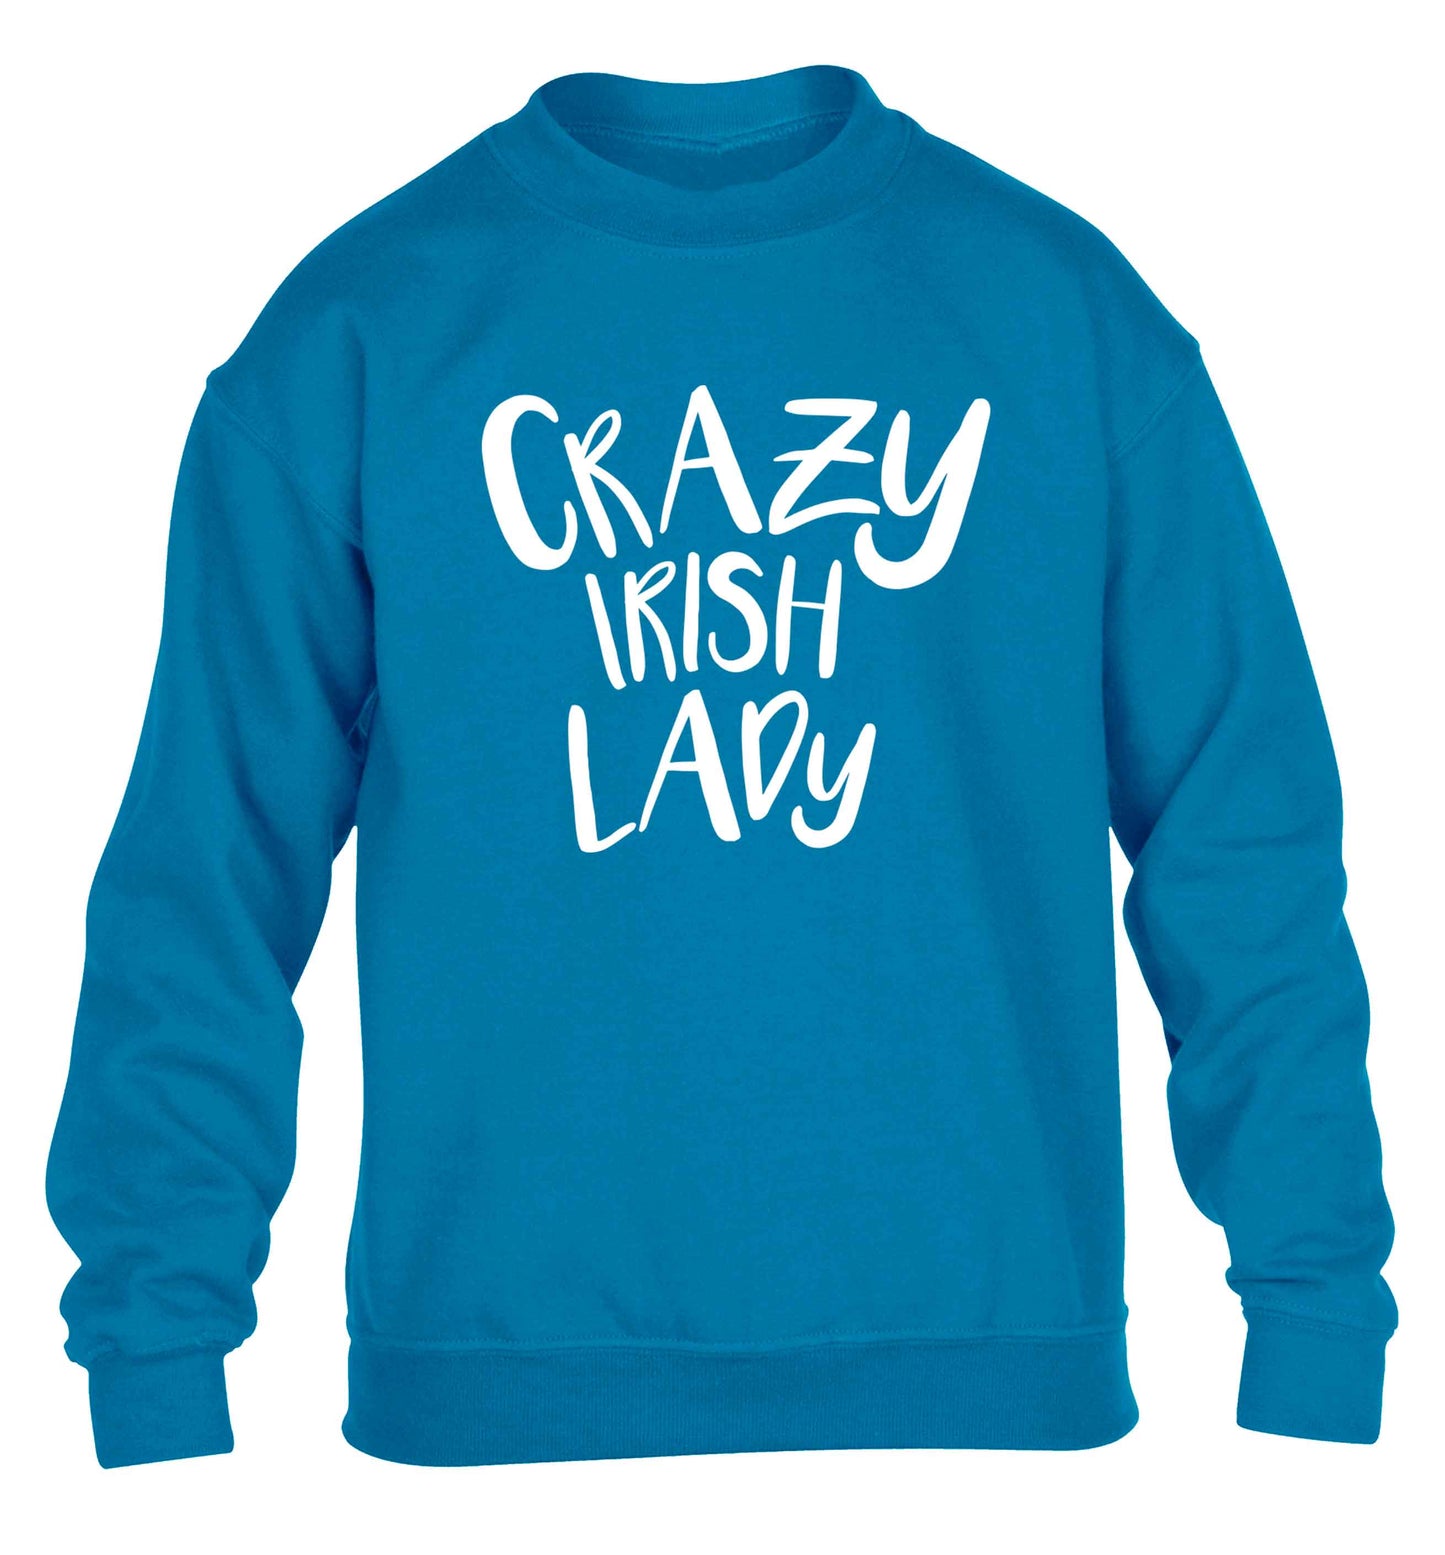 Crazy Irish lady children's blue sweater 12-13 Years